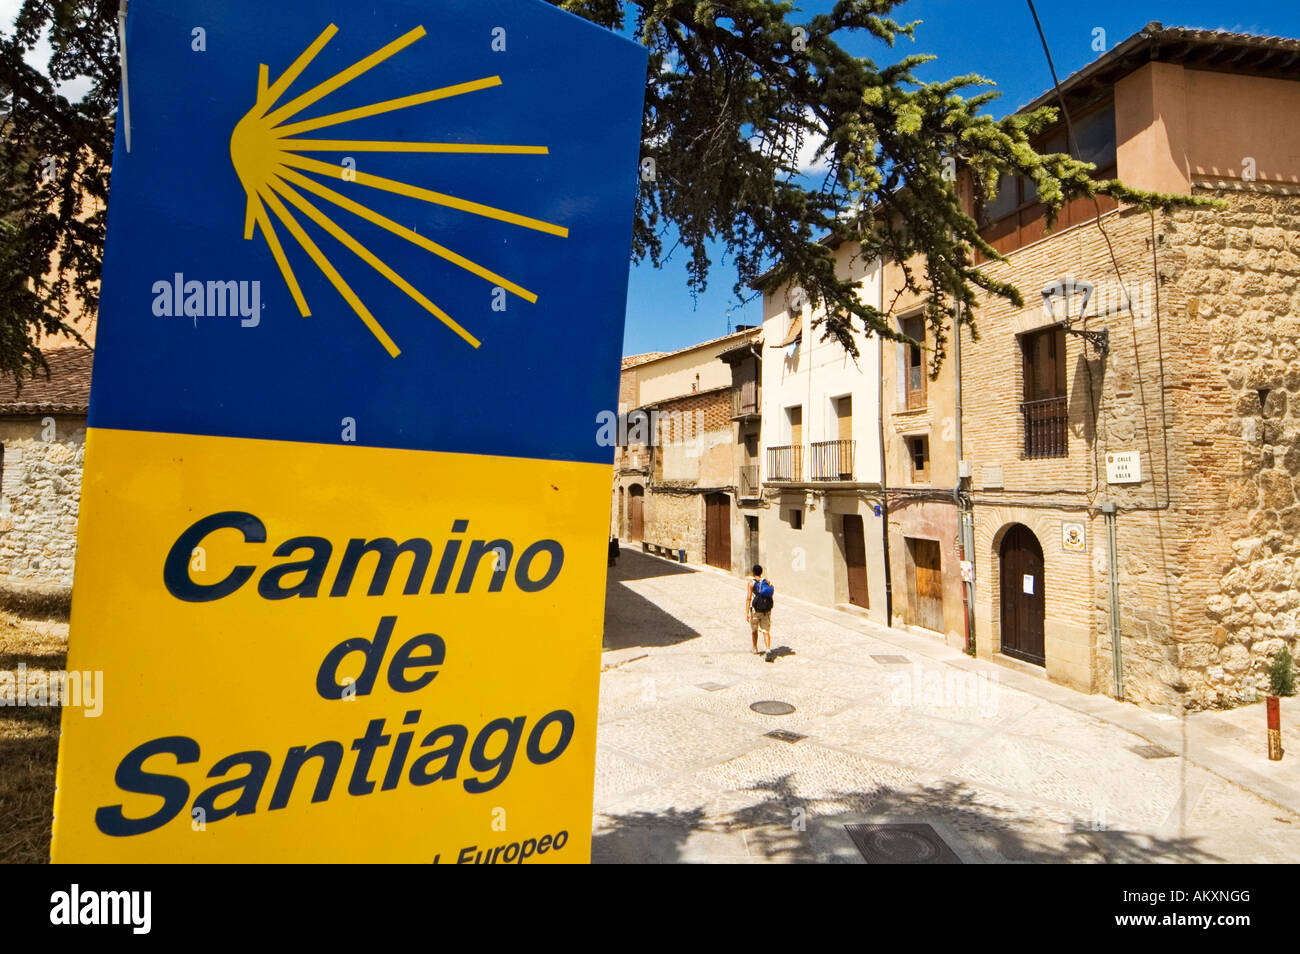 Texte du pétoncle et Camino de Santiago sur une carte jaune bleu, panneau pour le chemin de Saint Jacques, Navarra, Espagne Banque D'Images